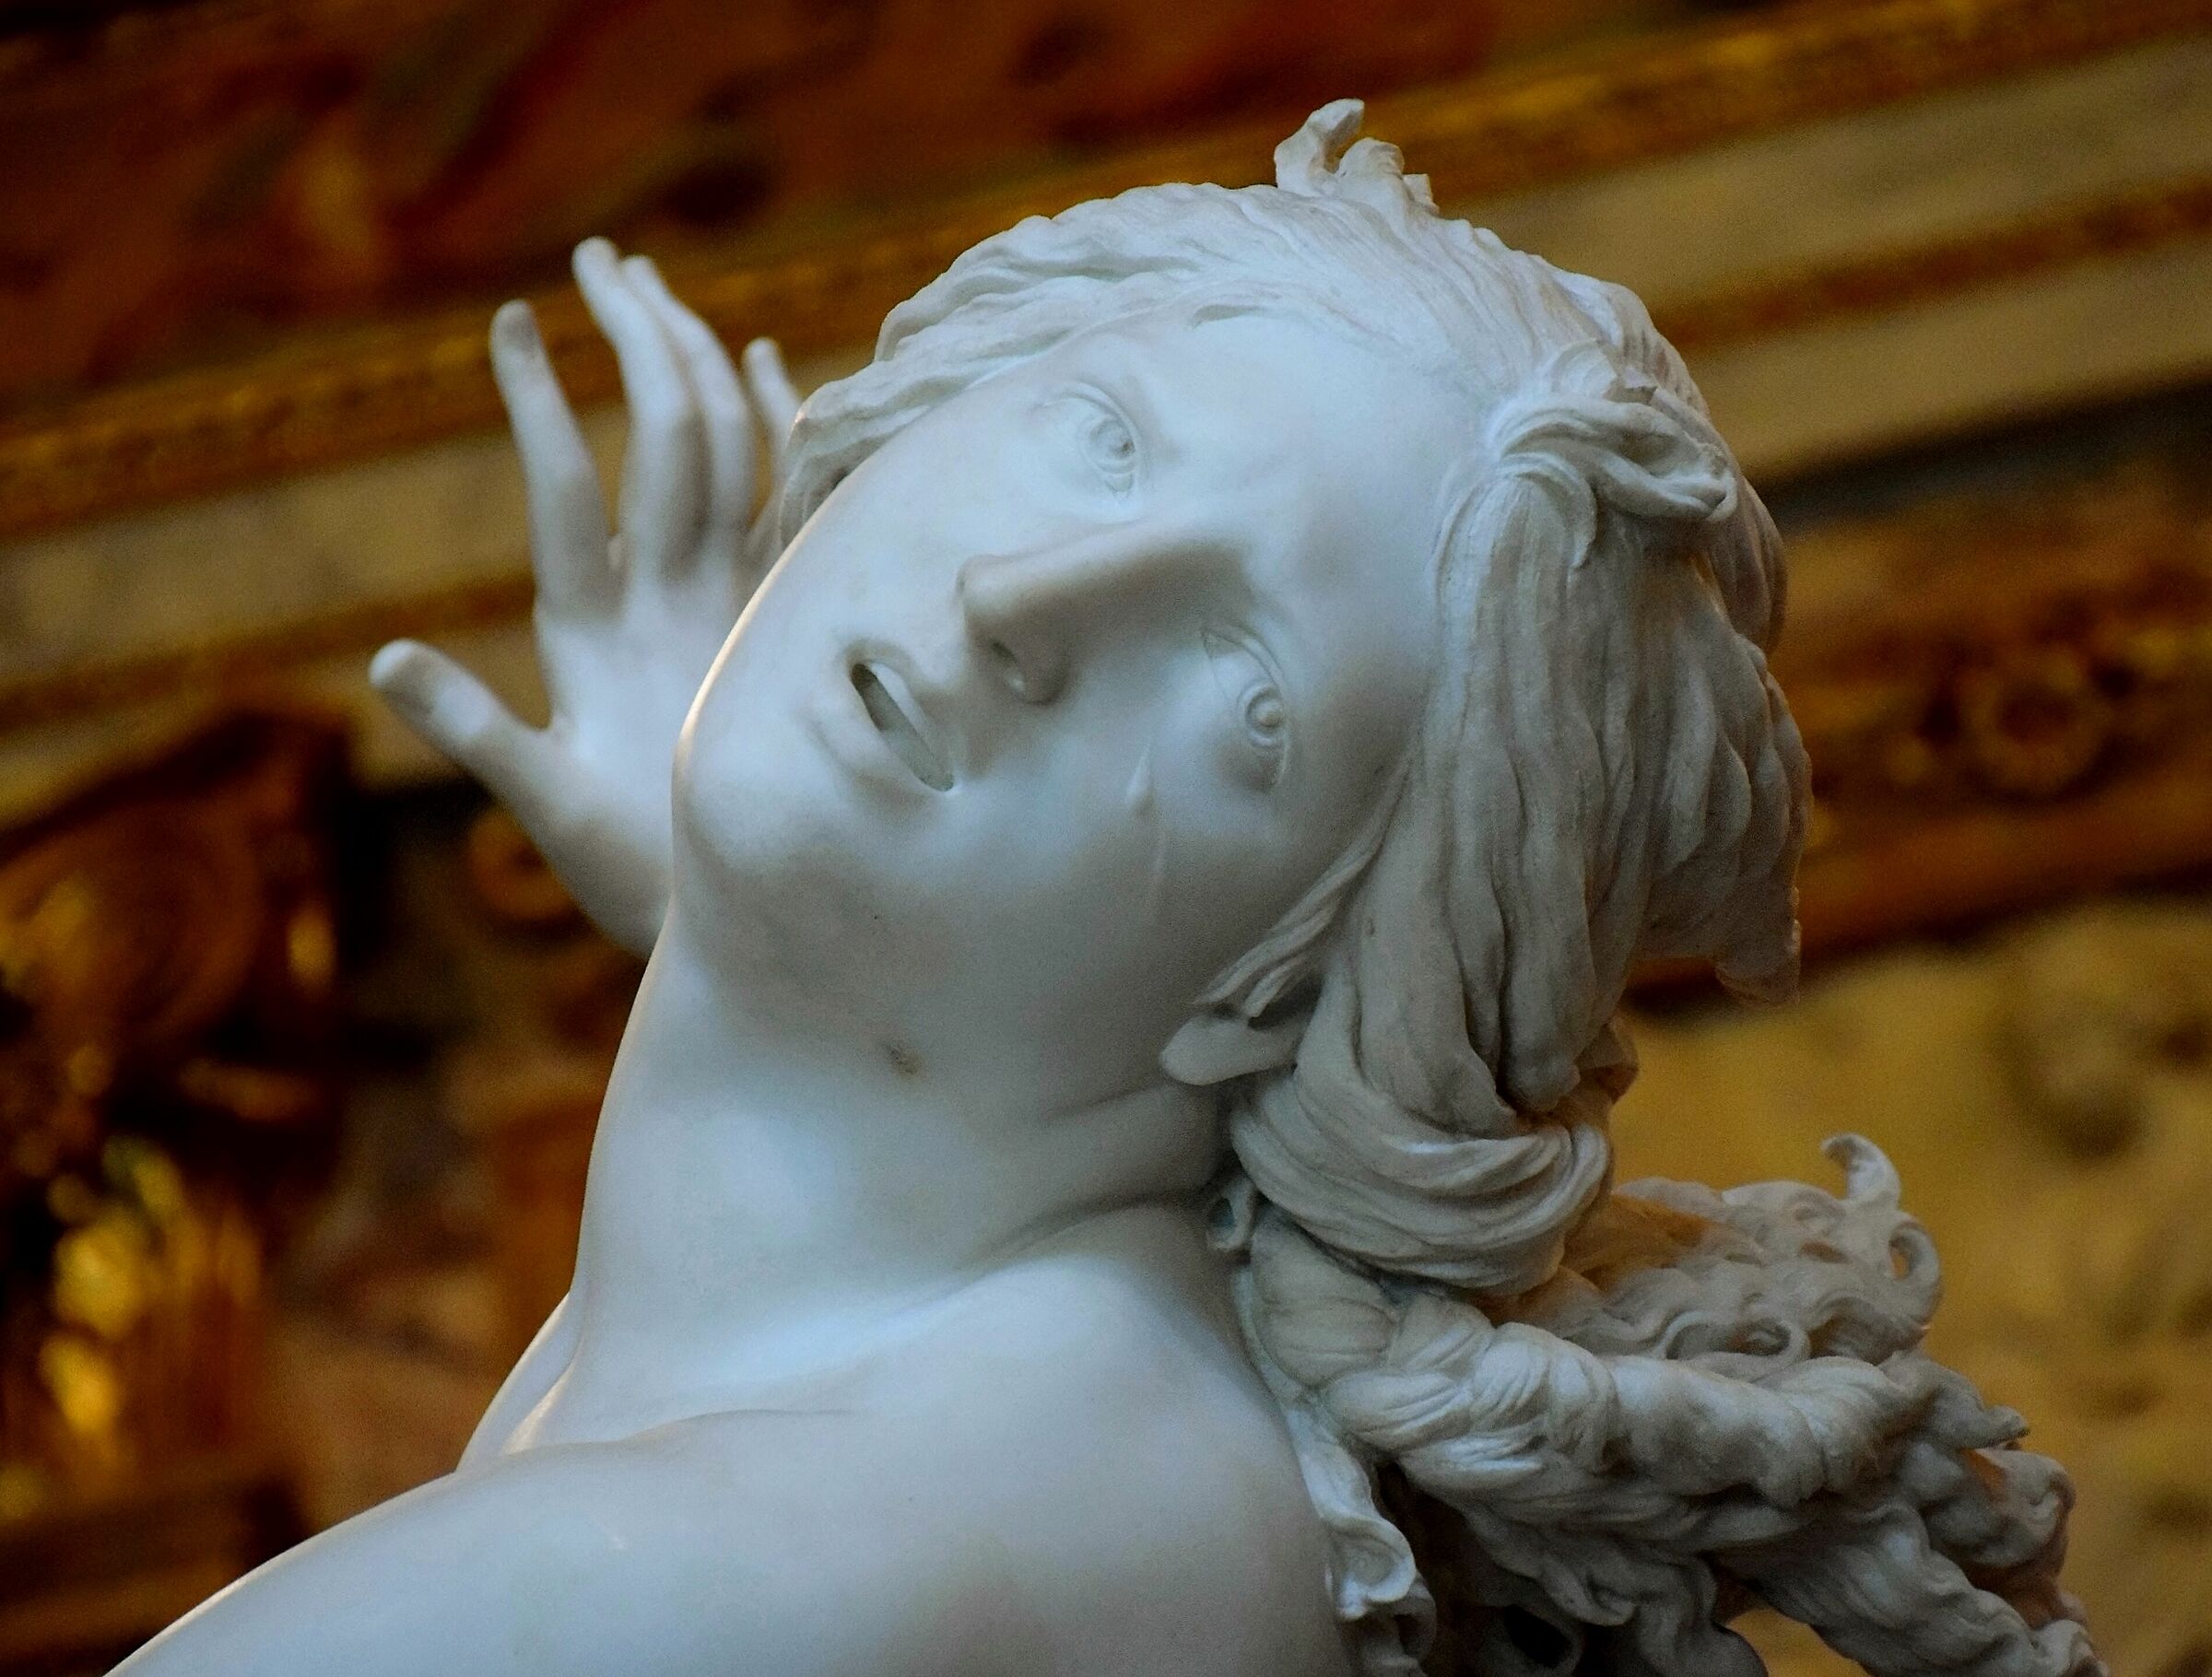 Galleria Borghese - Bernini "Il Ratto di Proserpina"...